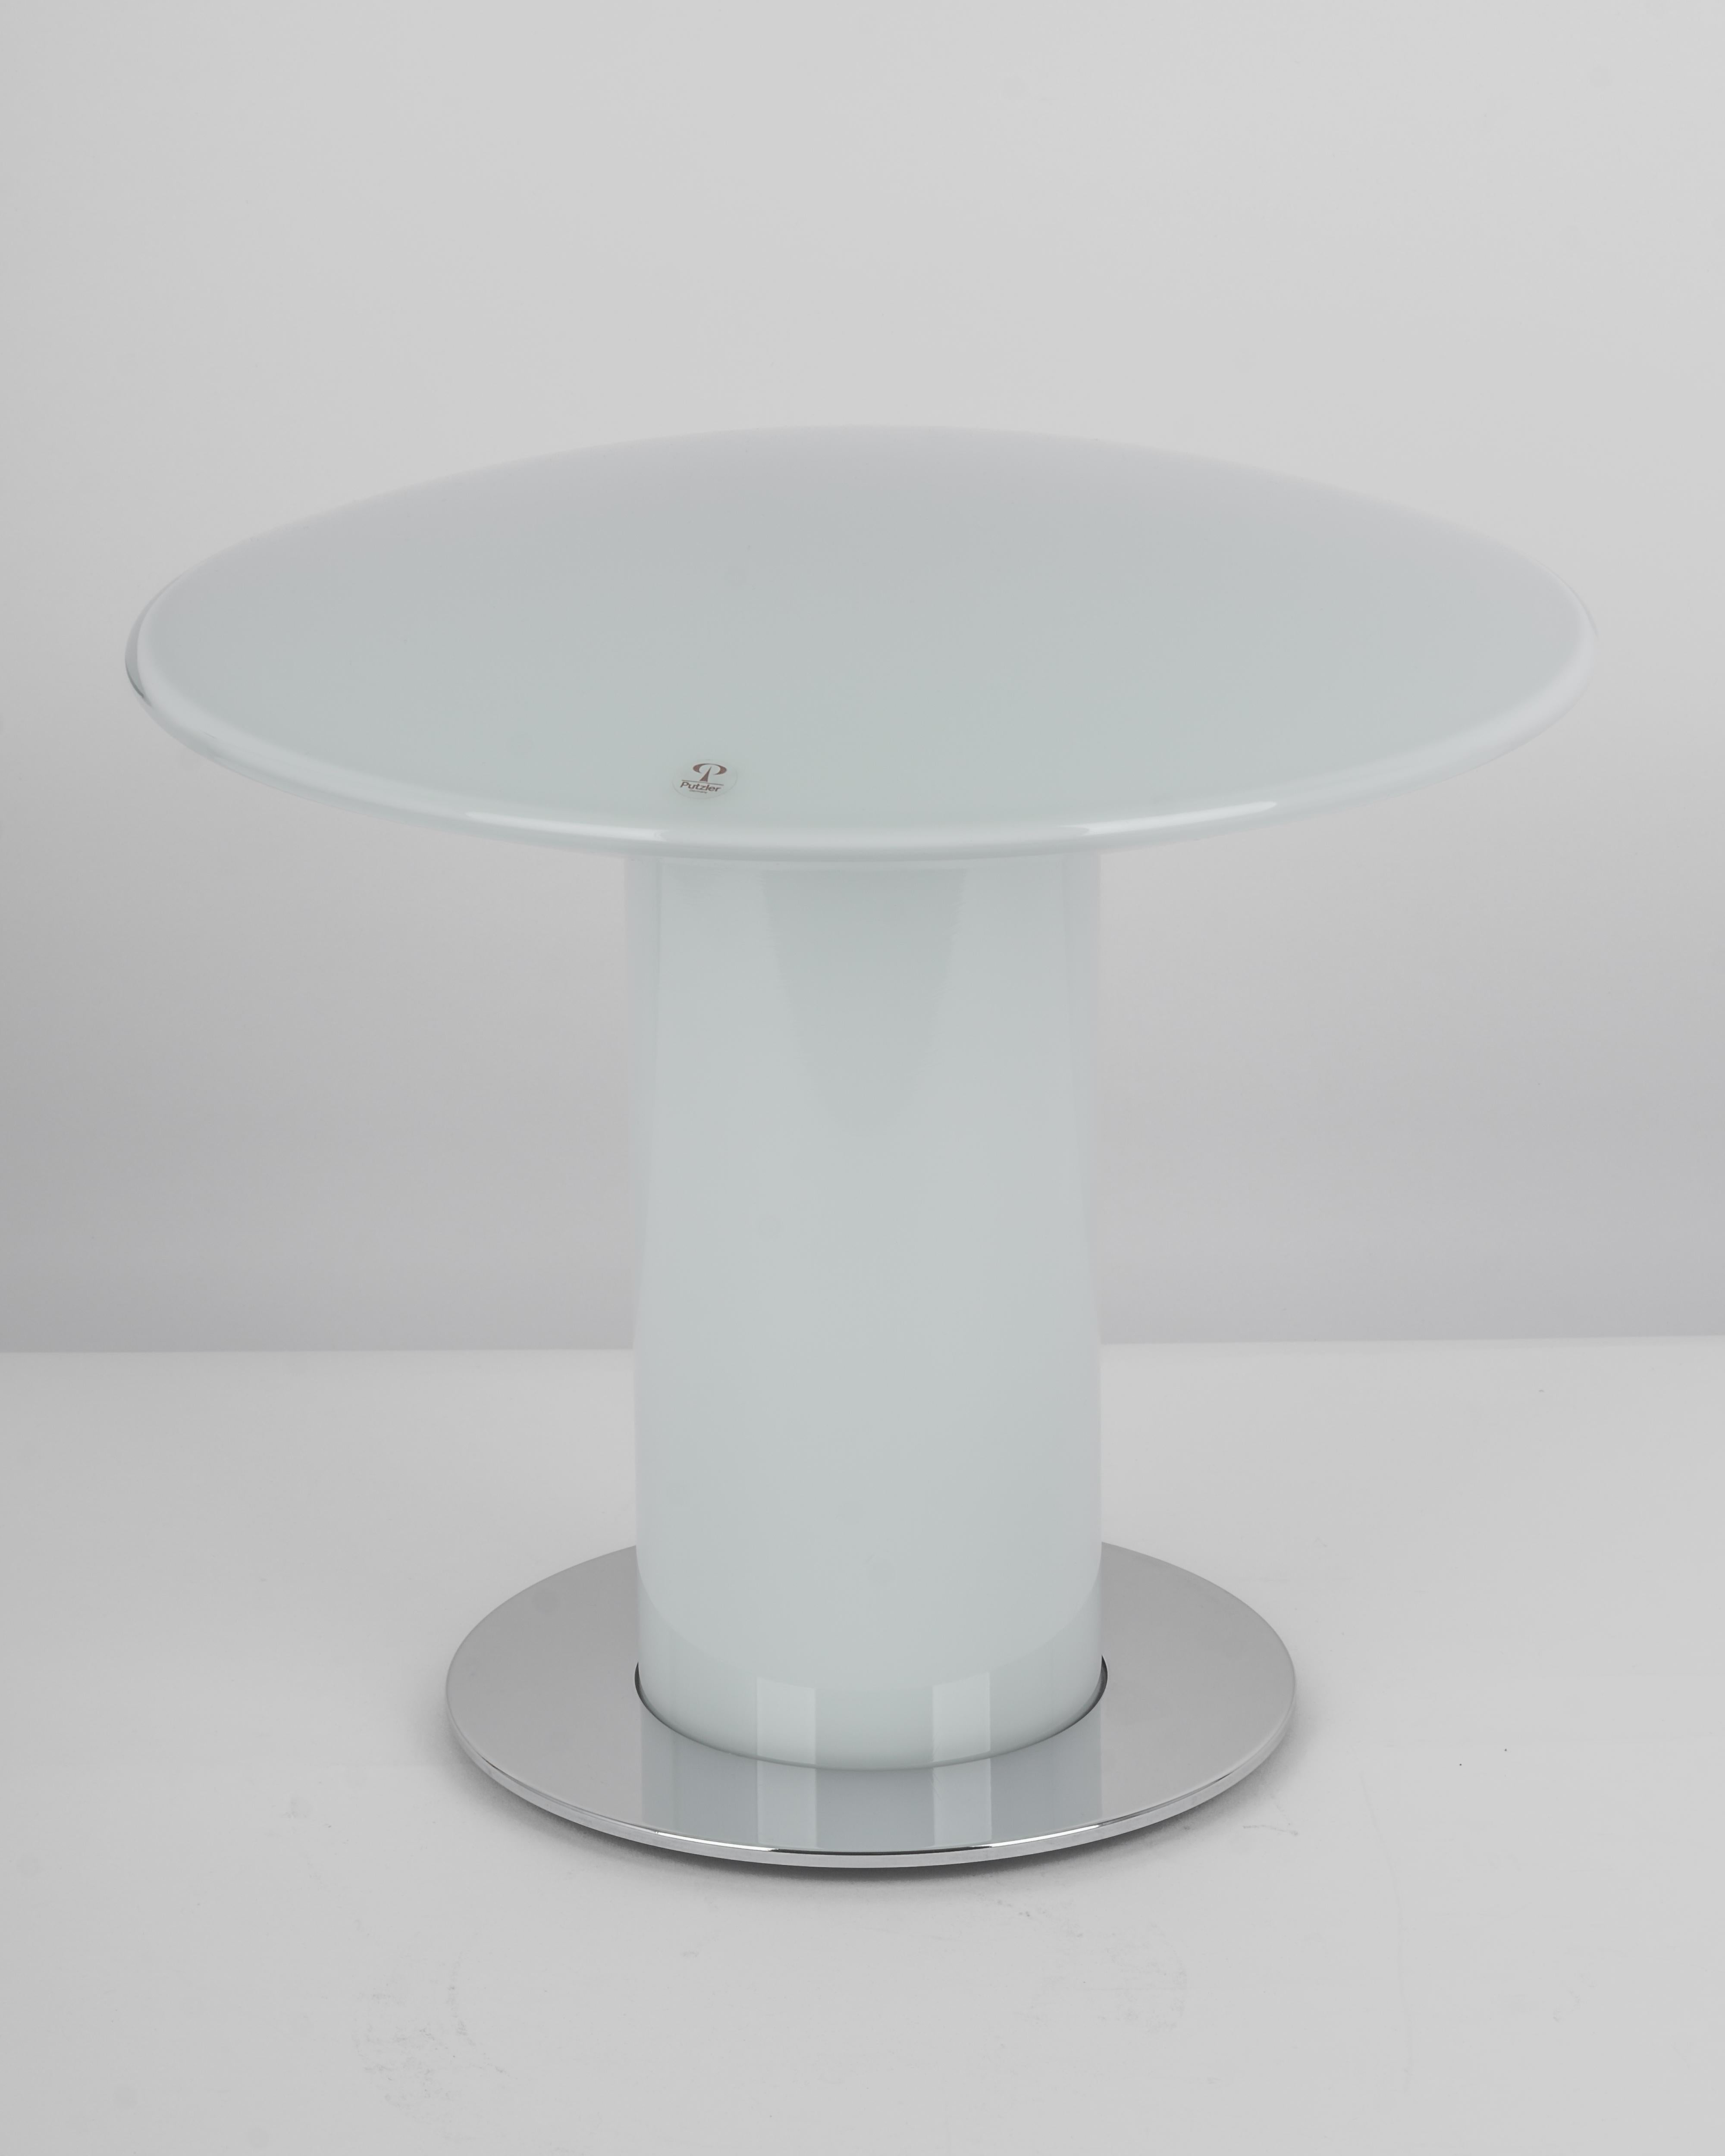 Merveilleuse lampe de table champignon de Peill & Putzler, Allemagne, années 1970. Fabriqué en une seule pièce.
Le corps en verre et sa qualité tranchante contrastent joliment avec la surface lisse et la forme du champignon. 

Mesures : Grande lampe